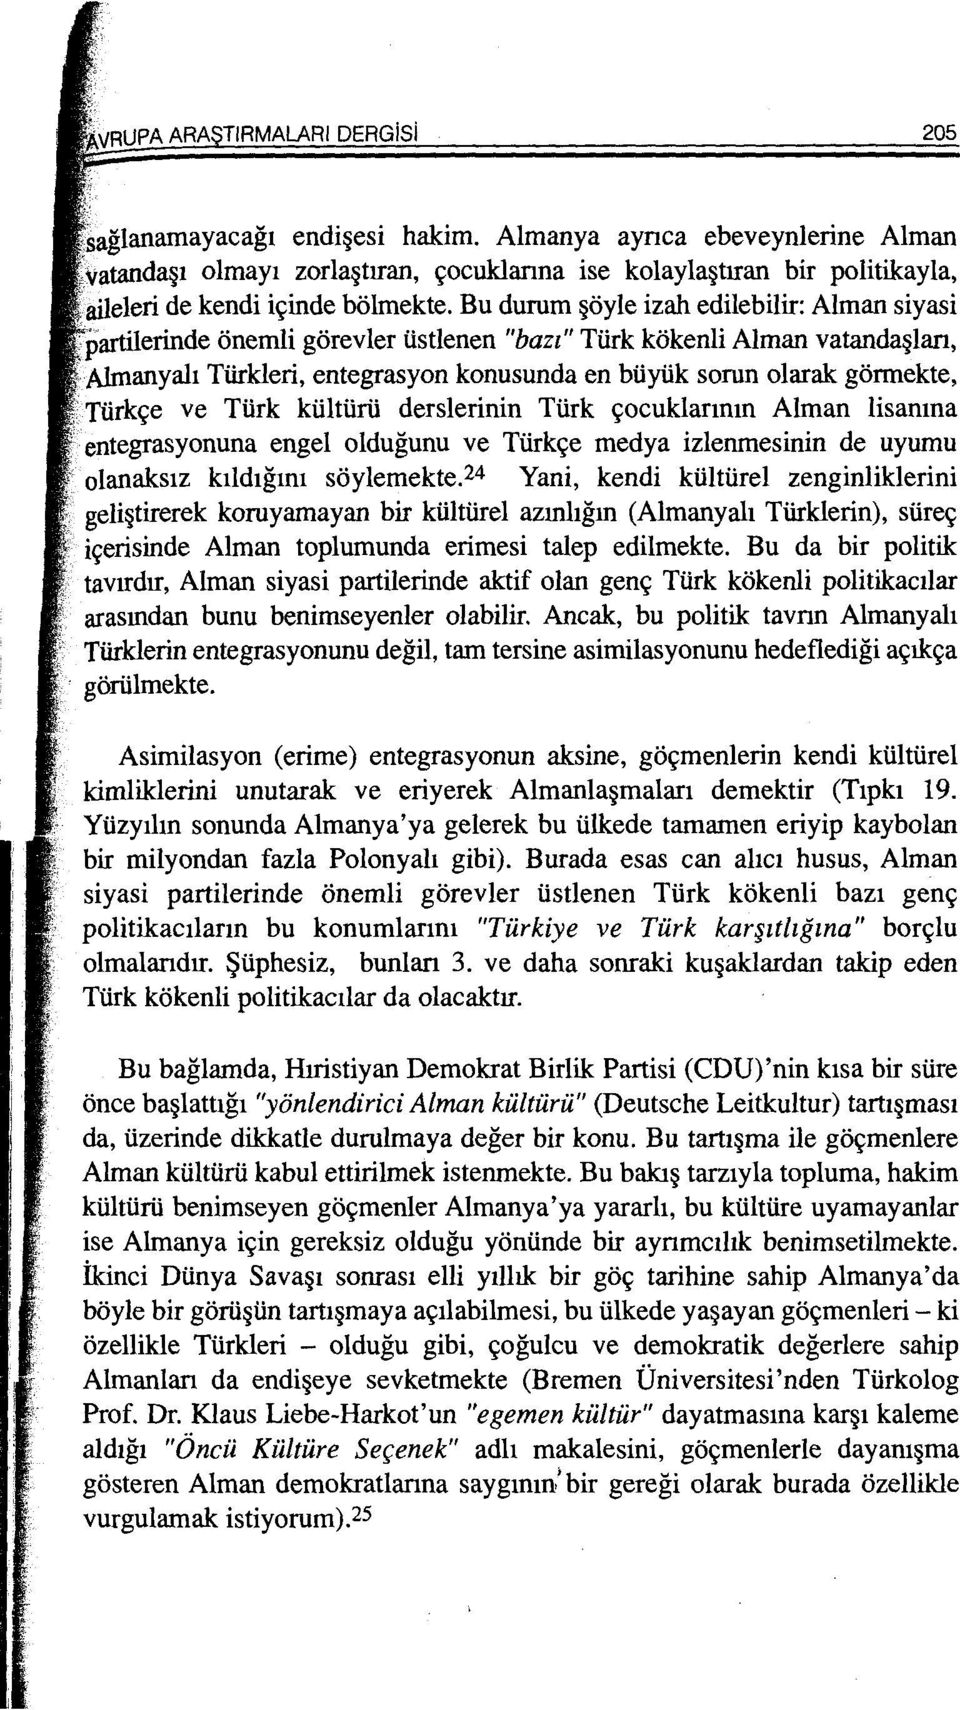 Aimanyah Tiirkleri, entegrasyon konusunda en buyuk sorun olarak: gormekte, Turk e ve Turk kliltlirli derslerinin Turk 9ocuklanmn Alman lisanma entegrasyonuna engel oldugunu ve Turk9e medya